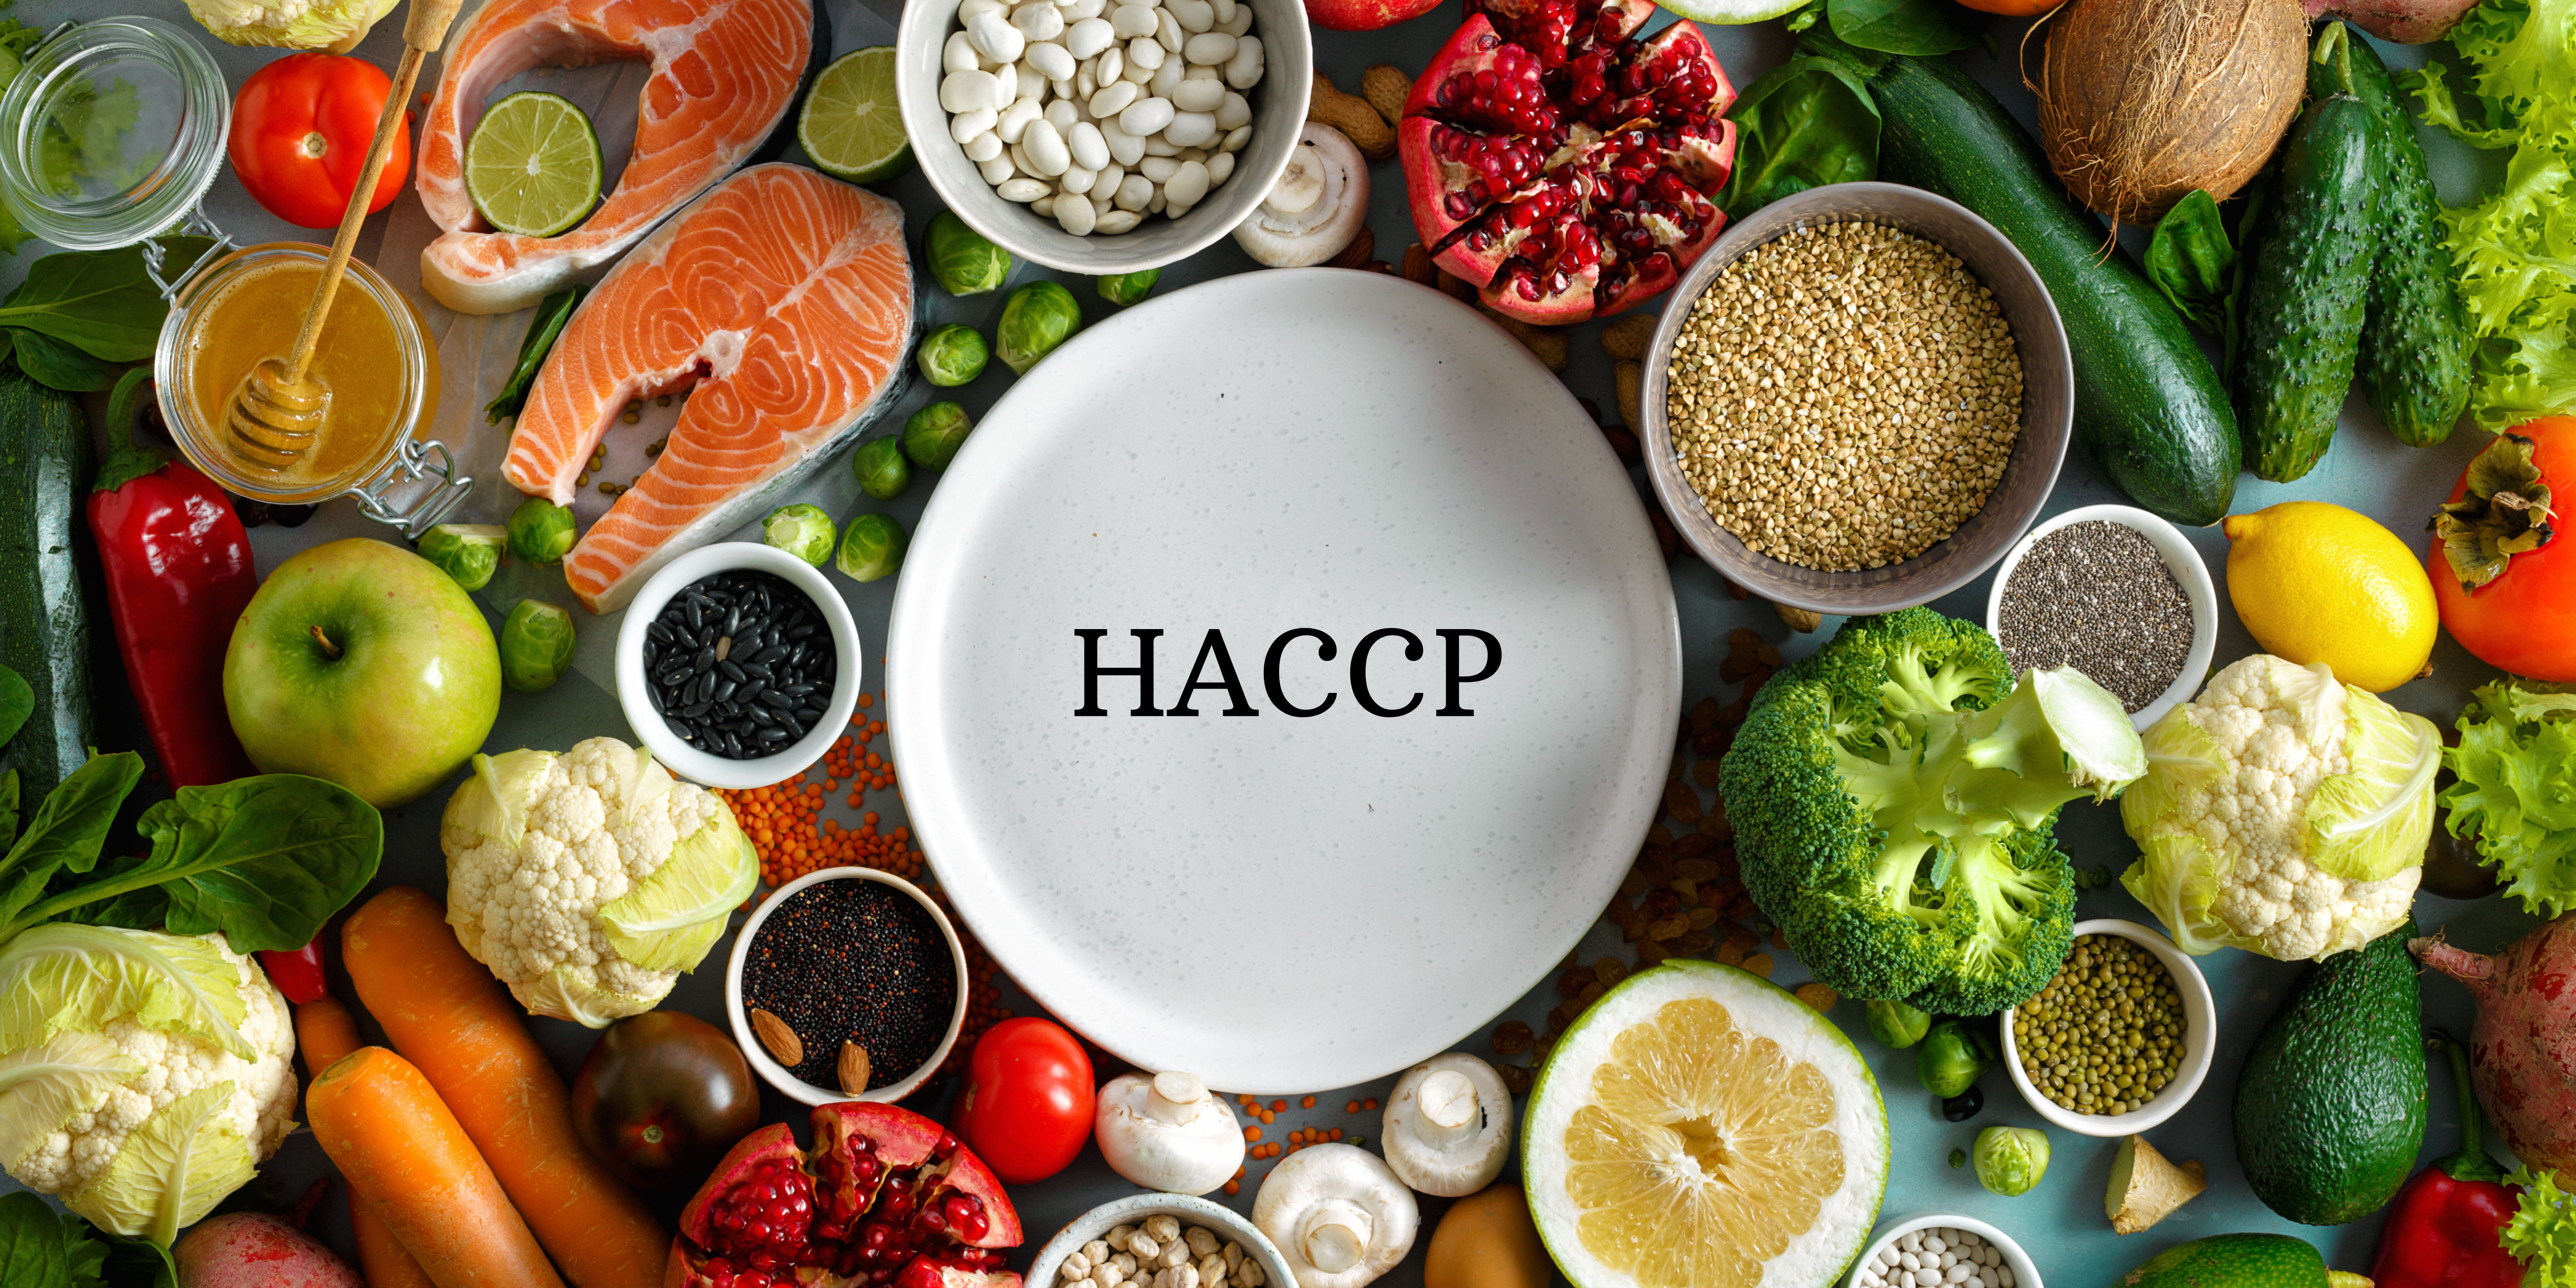 Session e-learning - HACCP : Les fondamentaux de l'hygiène alimentaire en cuisine